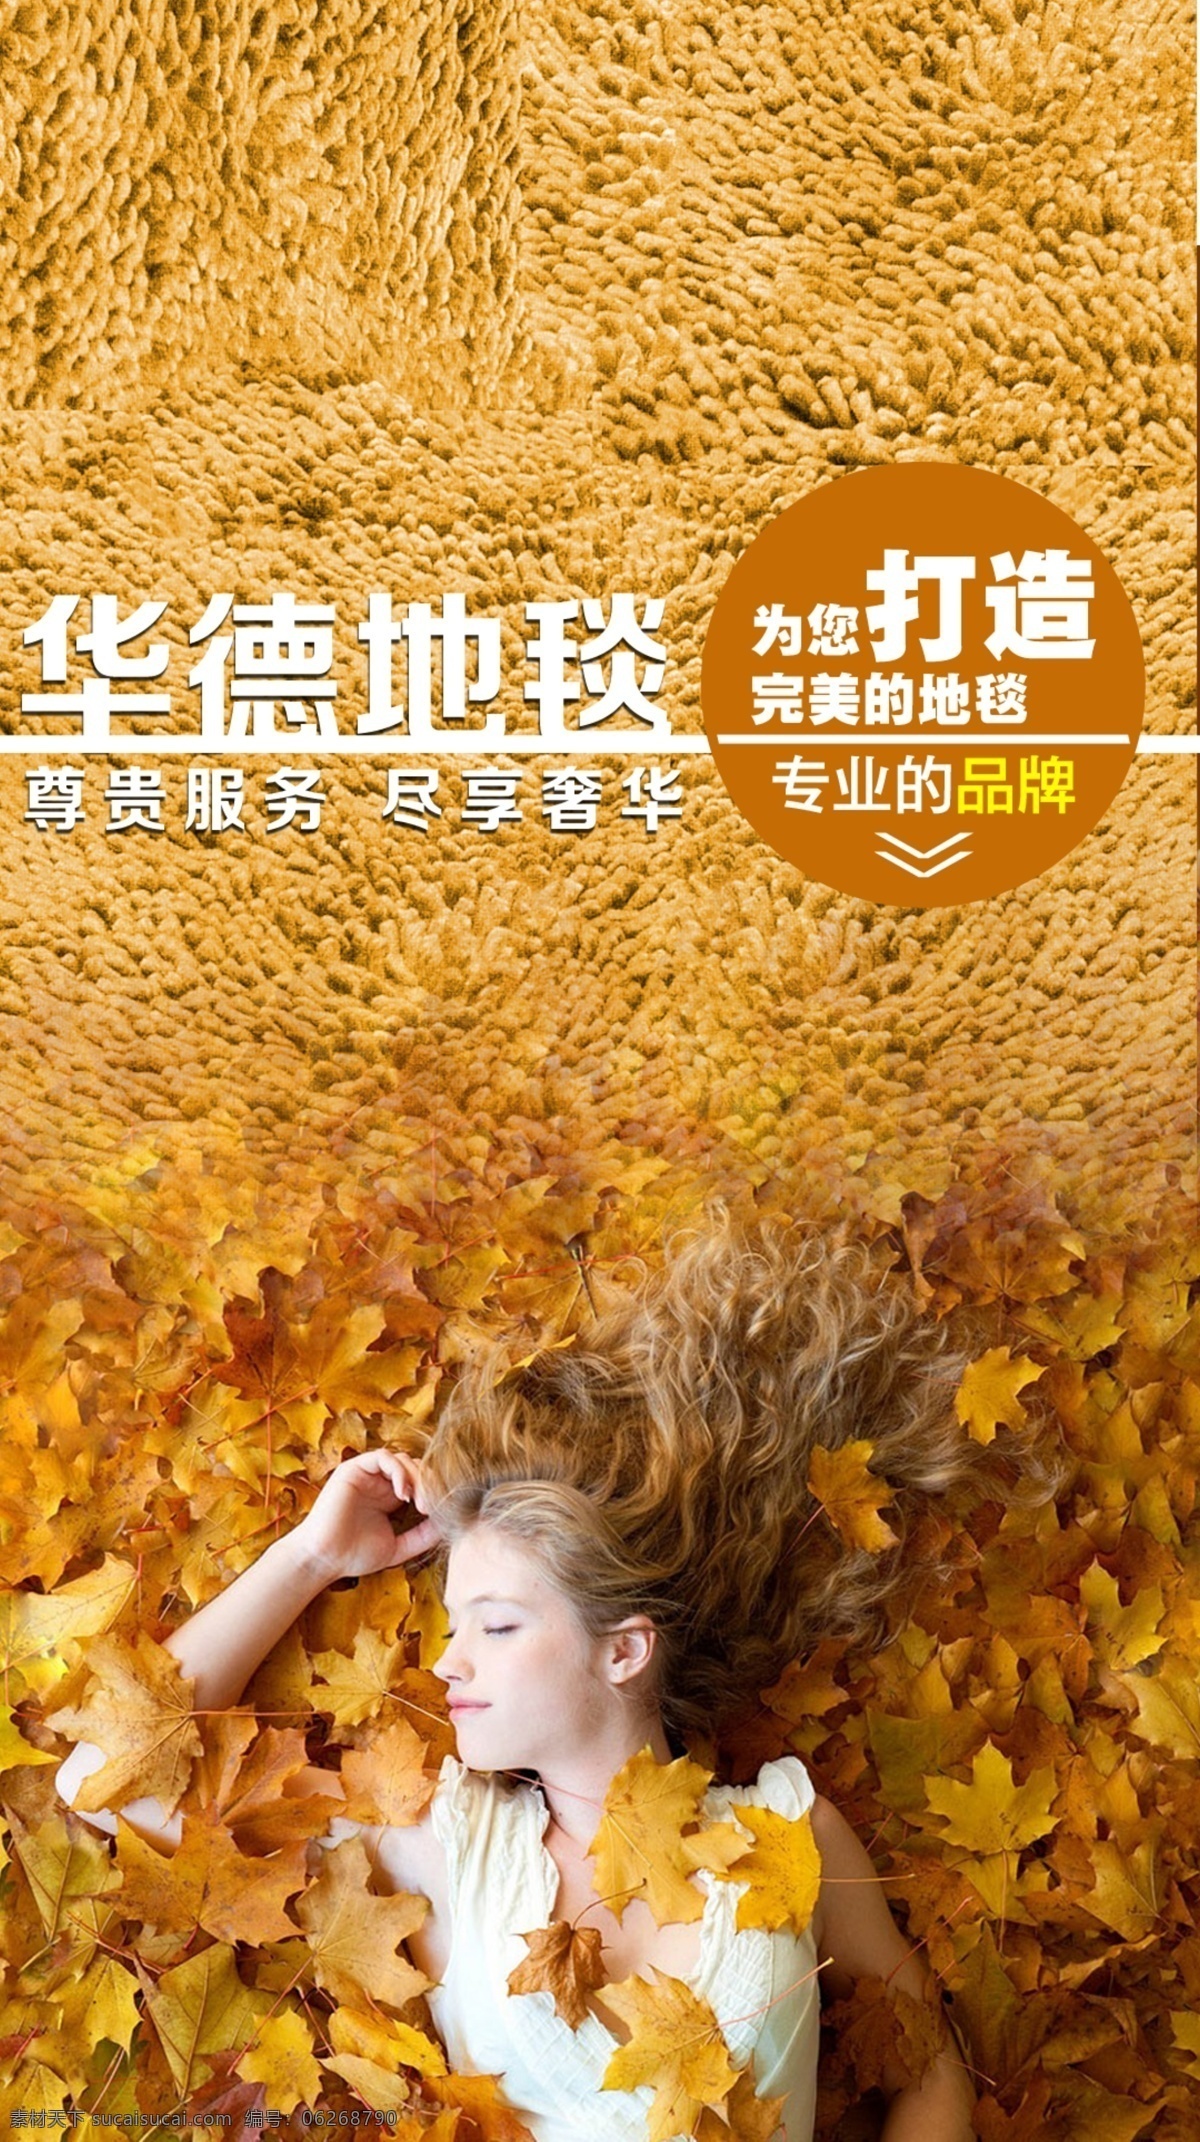 创意地毯 地毯广告 创意广告 秋天树叶 躺着的美女 暖色调